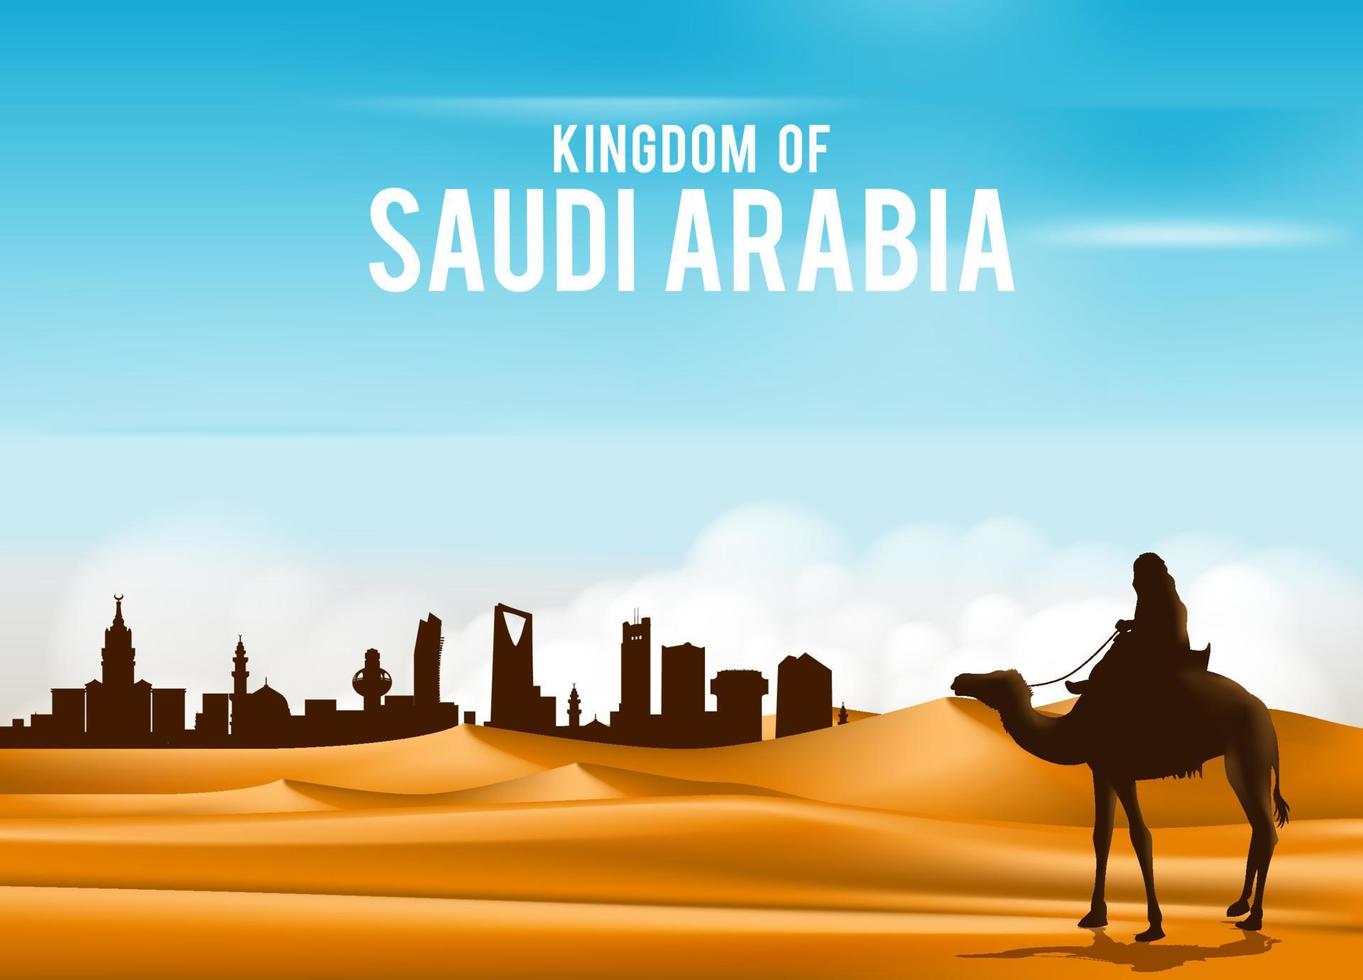 Arabische man rijdt op kameel in brede woestijnzanden in het Midden-Oosten en gaat naar de stad in het koninkrijk saoedi-arabië. bewerkbare vectorillustratie vector